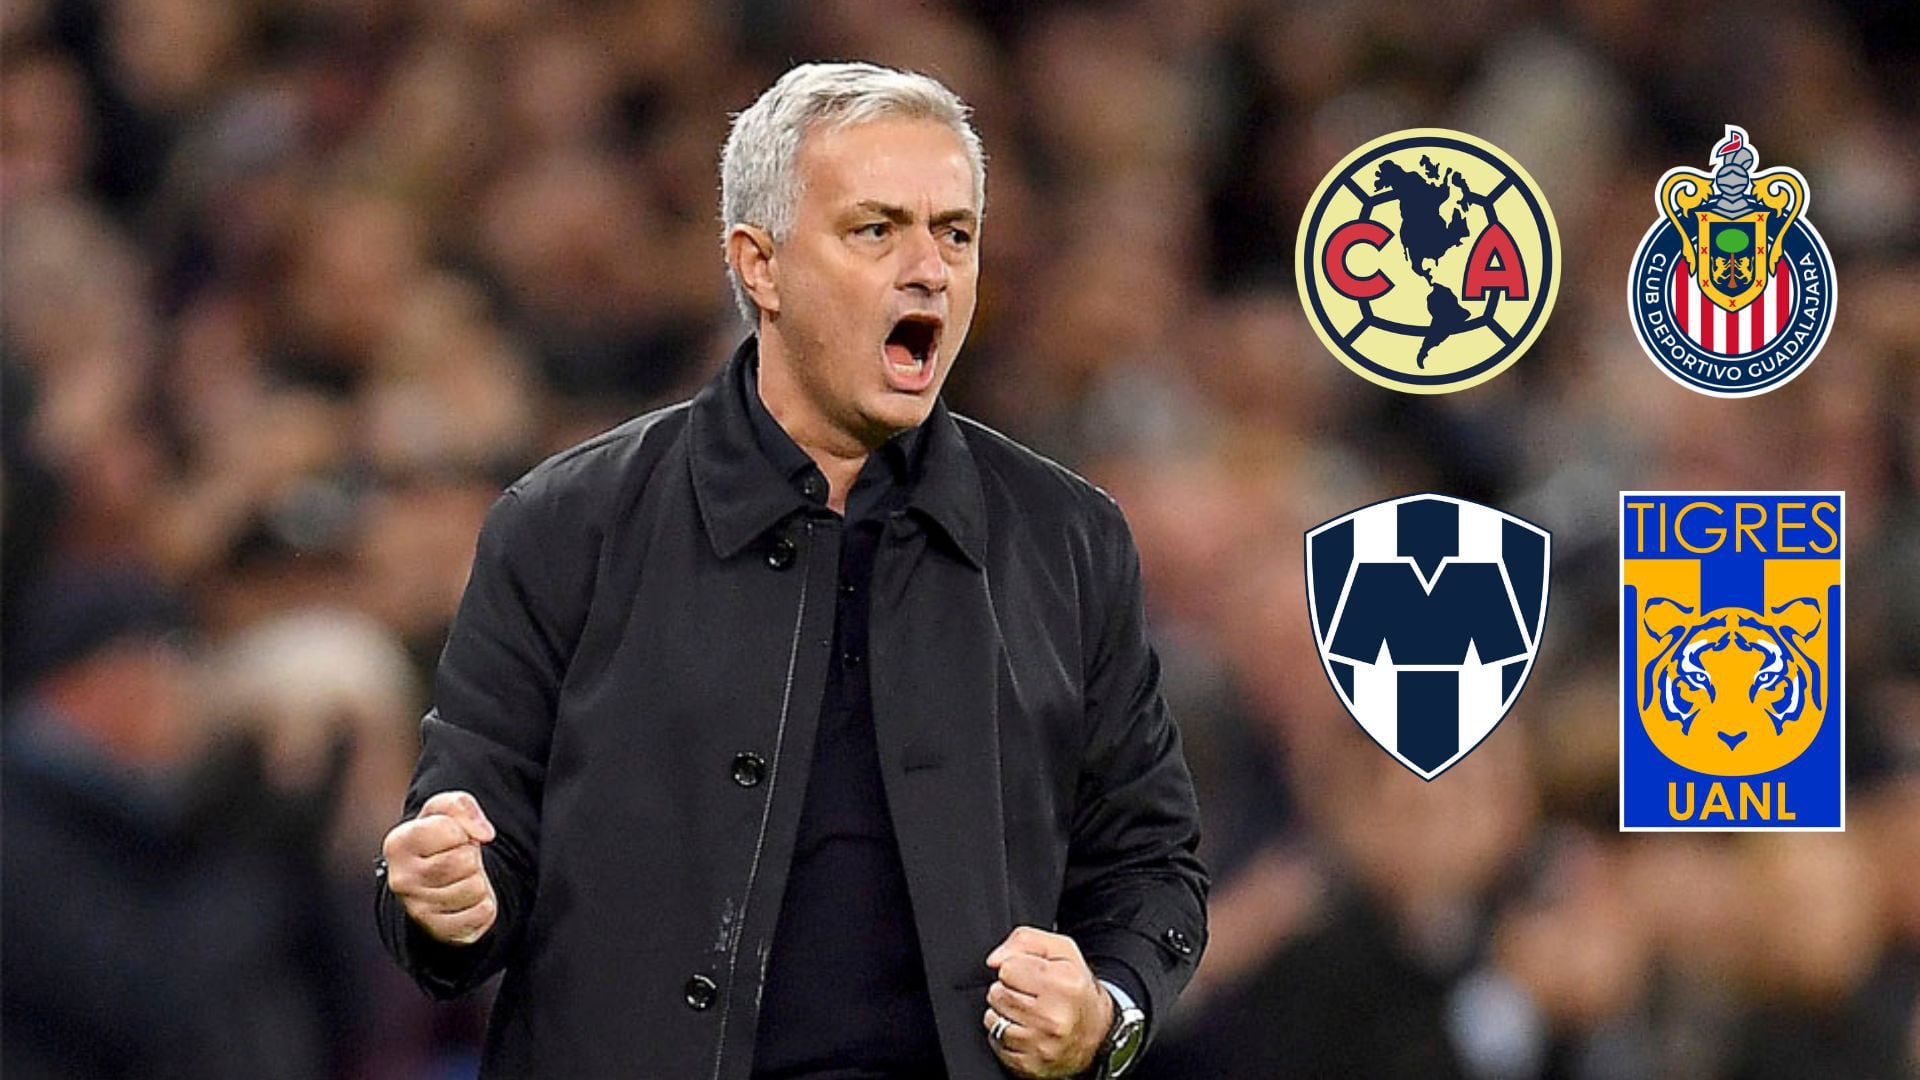 José Mourinho revela finalmente cuál es el “mejor equipo de México” al que llega